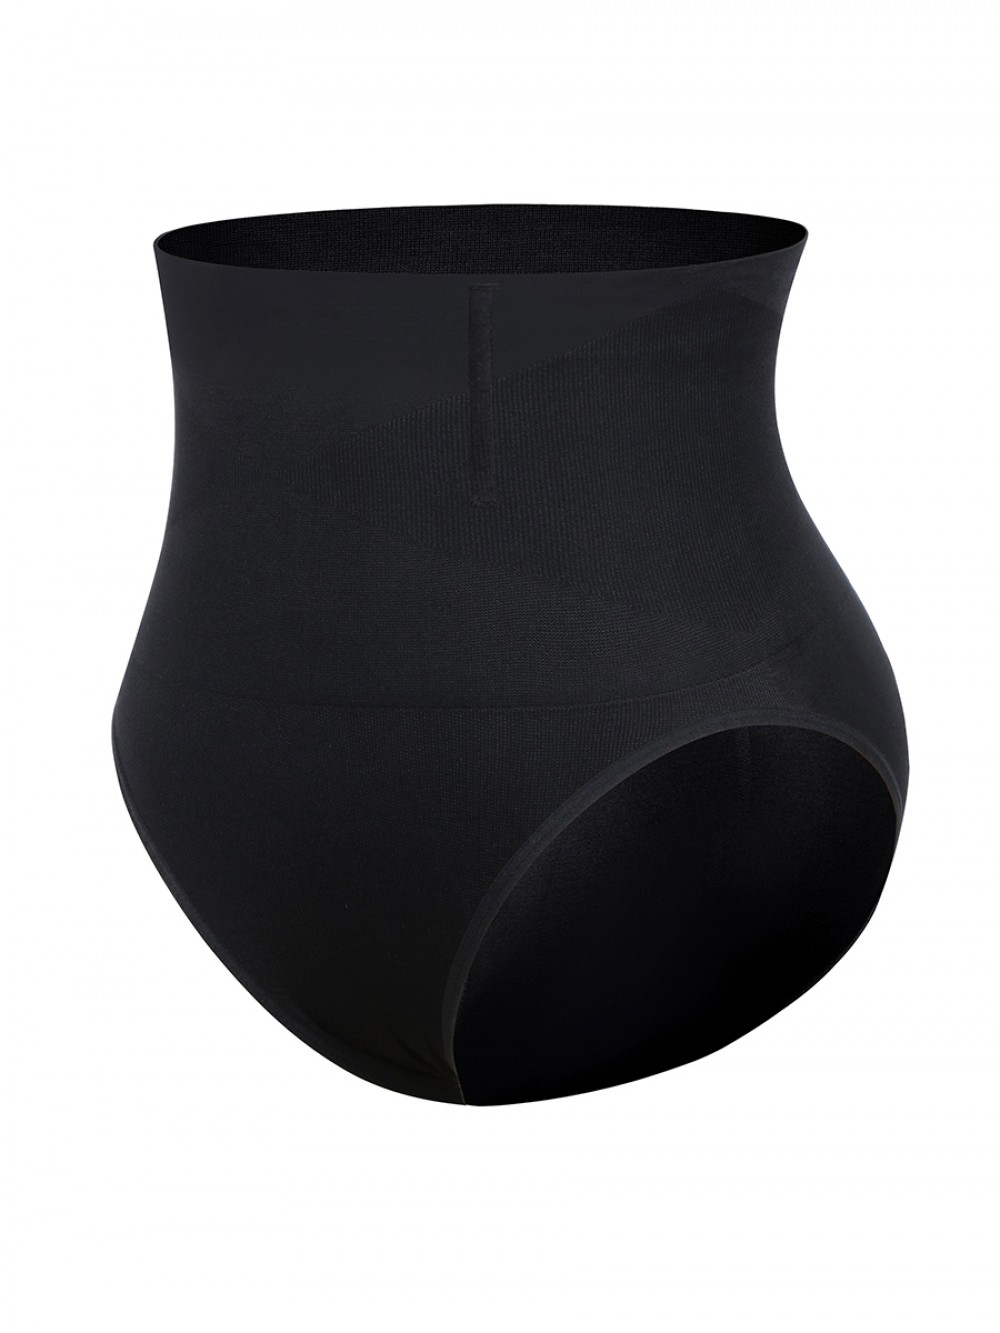 Black Seamless Plus Size Butt Lifter High Waist Figure Shaping